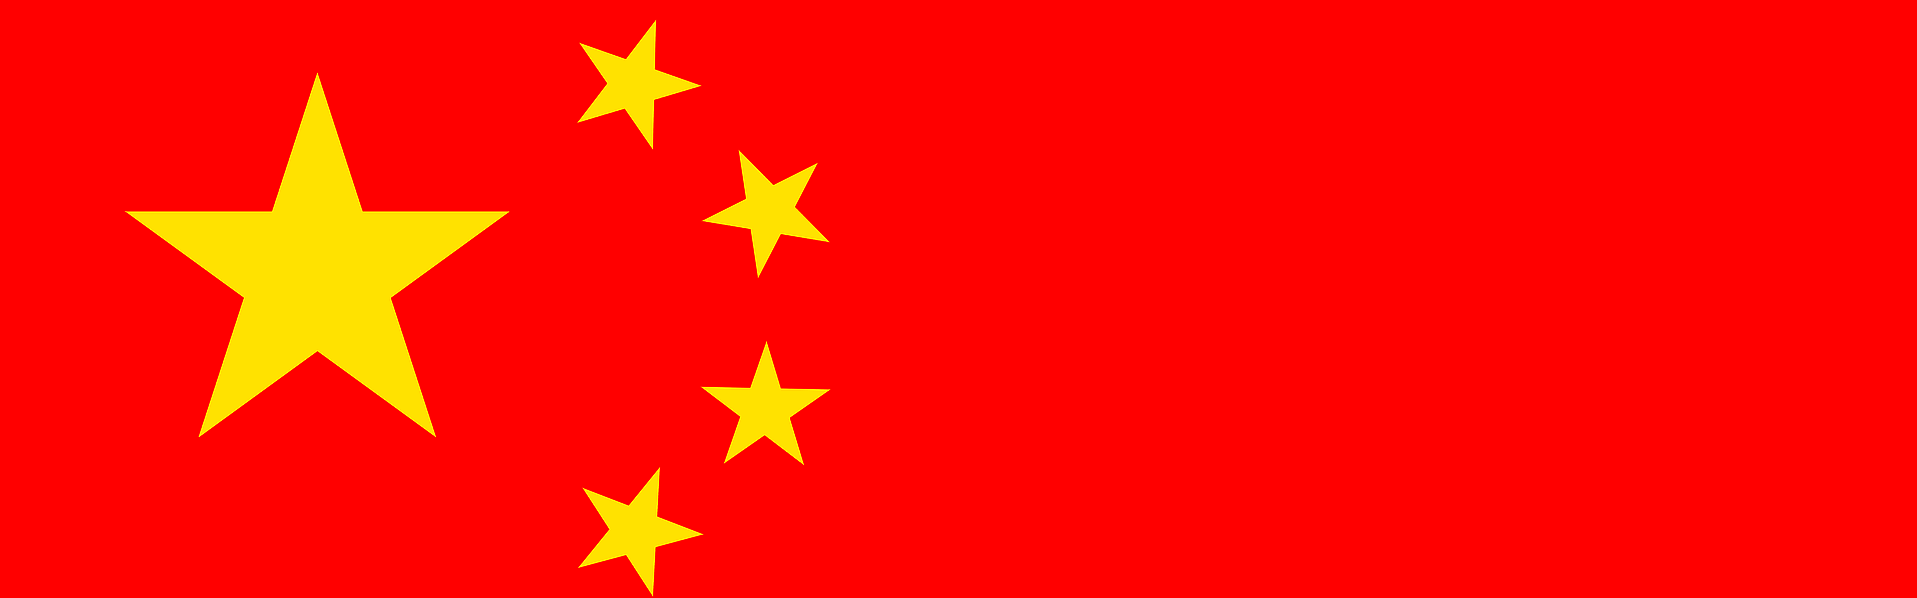 Das Bild zeigt die Flagge China